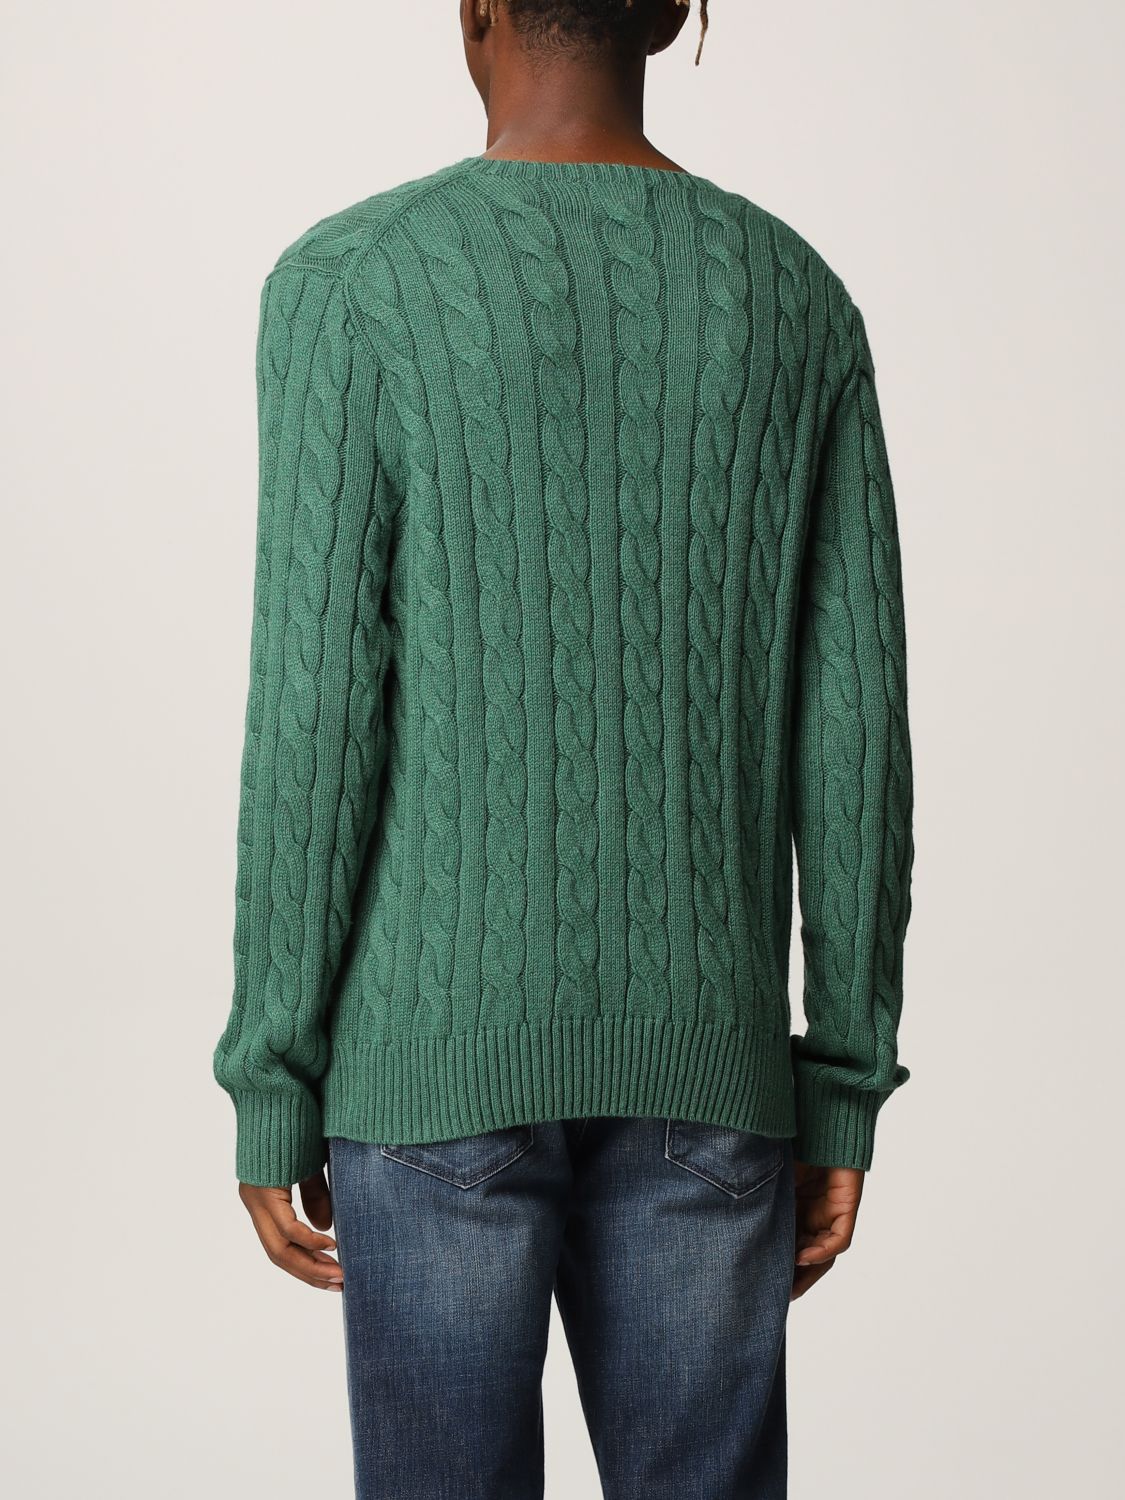 POLO RALPH LAUREN: cotton sweater - Green | Sweater Polo Ralph Lauren ...